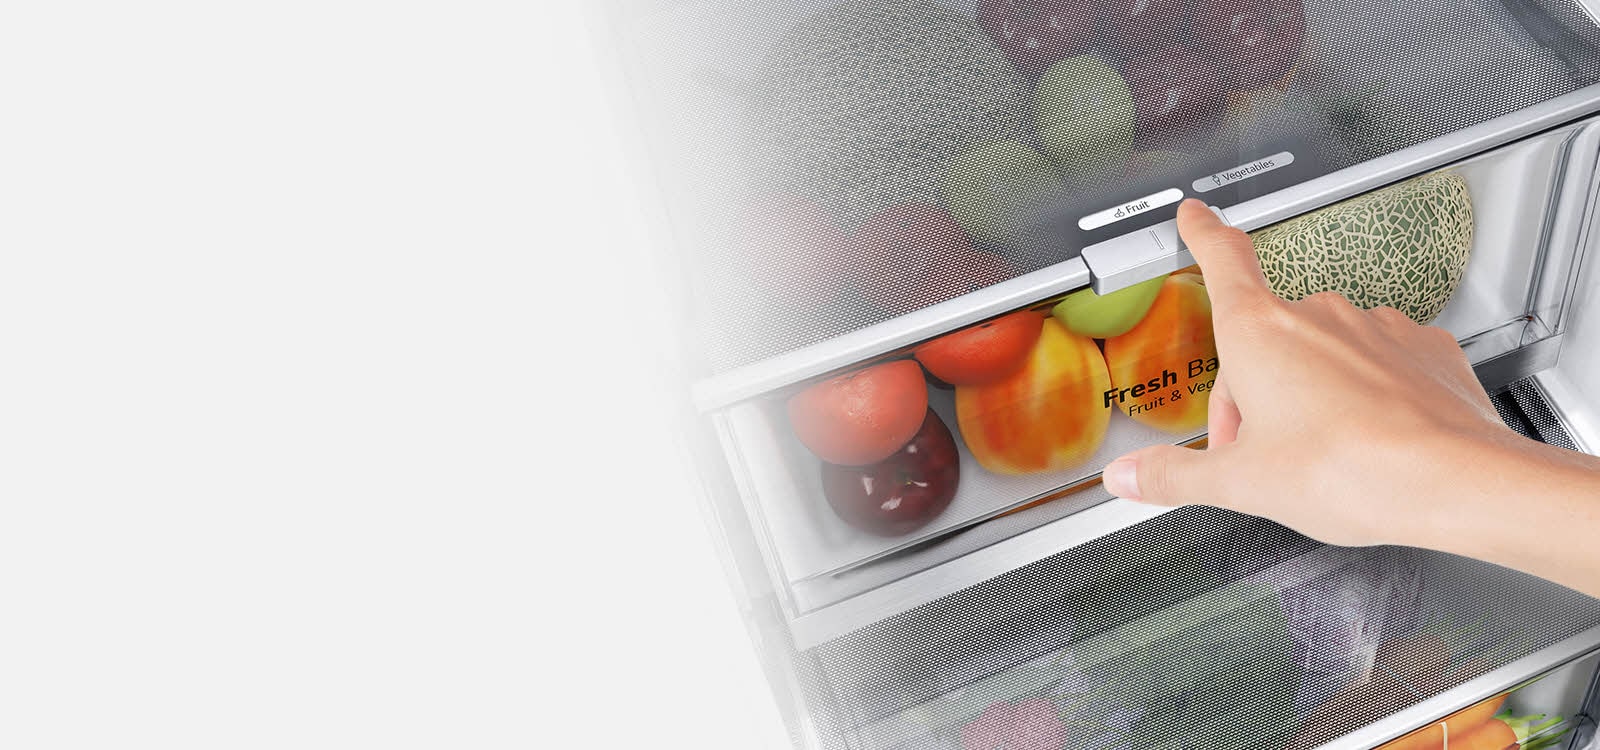 Нижние ящики холодильника заполнены яркими свежими продуктами.  Изображение внутри приближается к рычагу управления, чтобы выбрать оптимальный уровень влажности, обеспечивающий сохранение свежести продуктов.